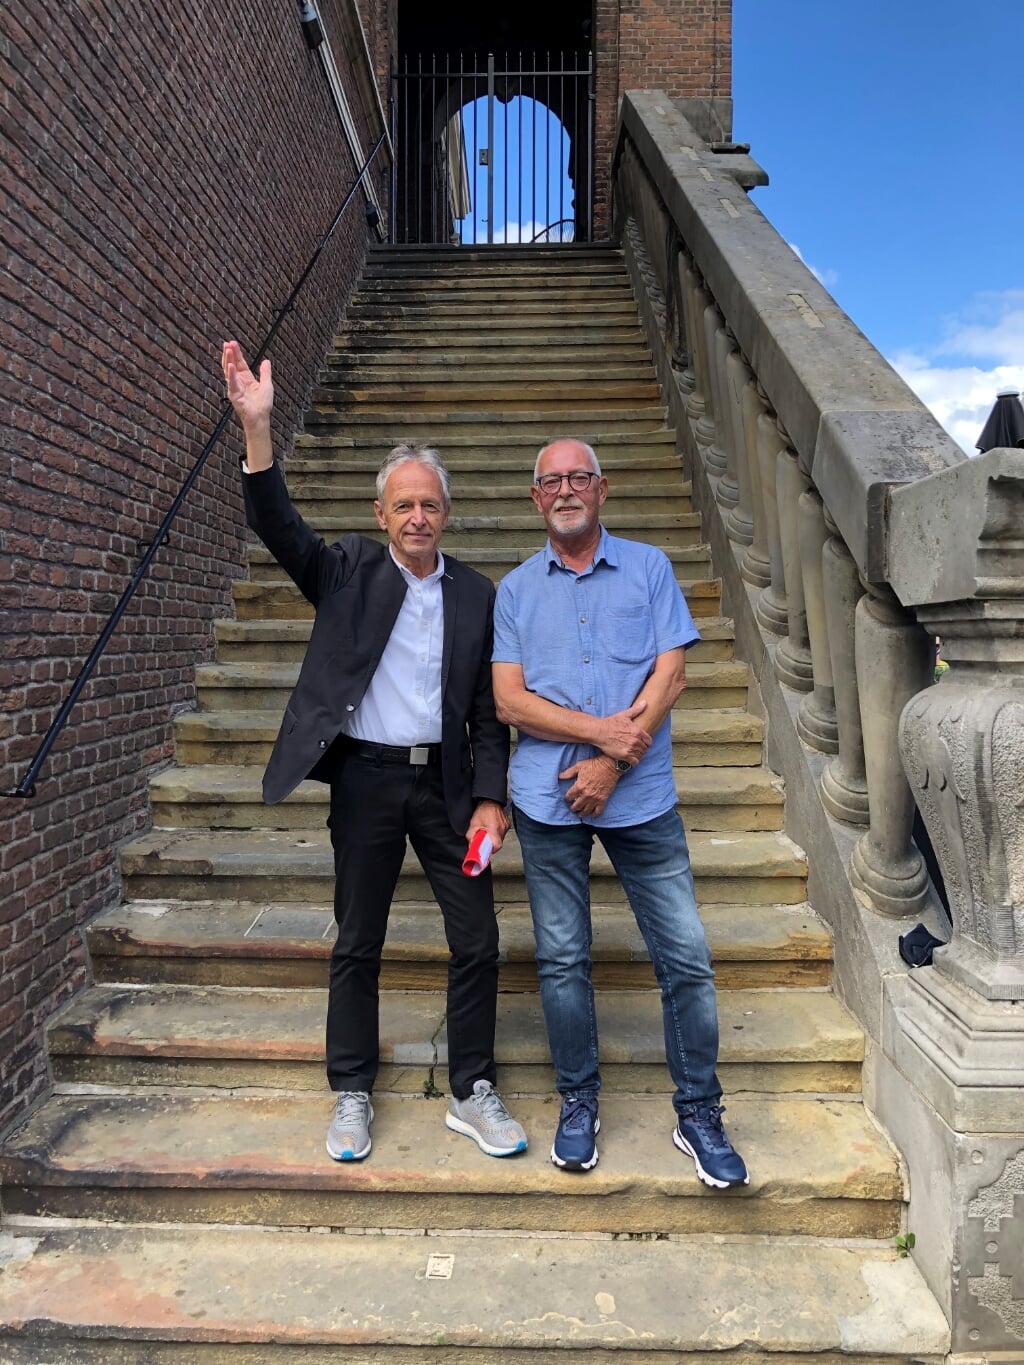 Frans Velthuis en Rob van Druten van cabaretduo Heit al geheurt. Foto: Emy Vesseur